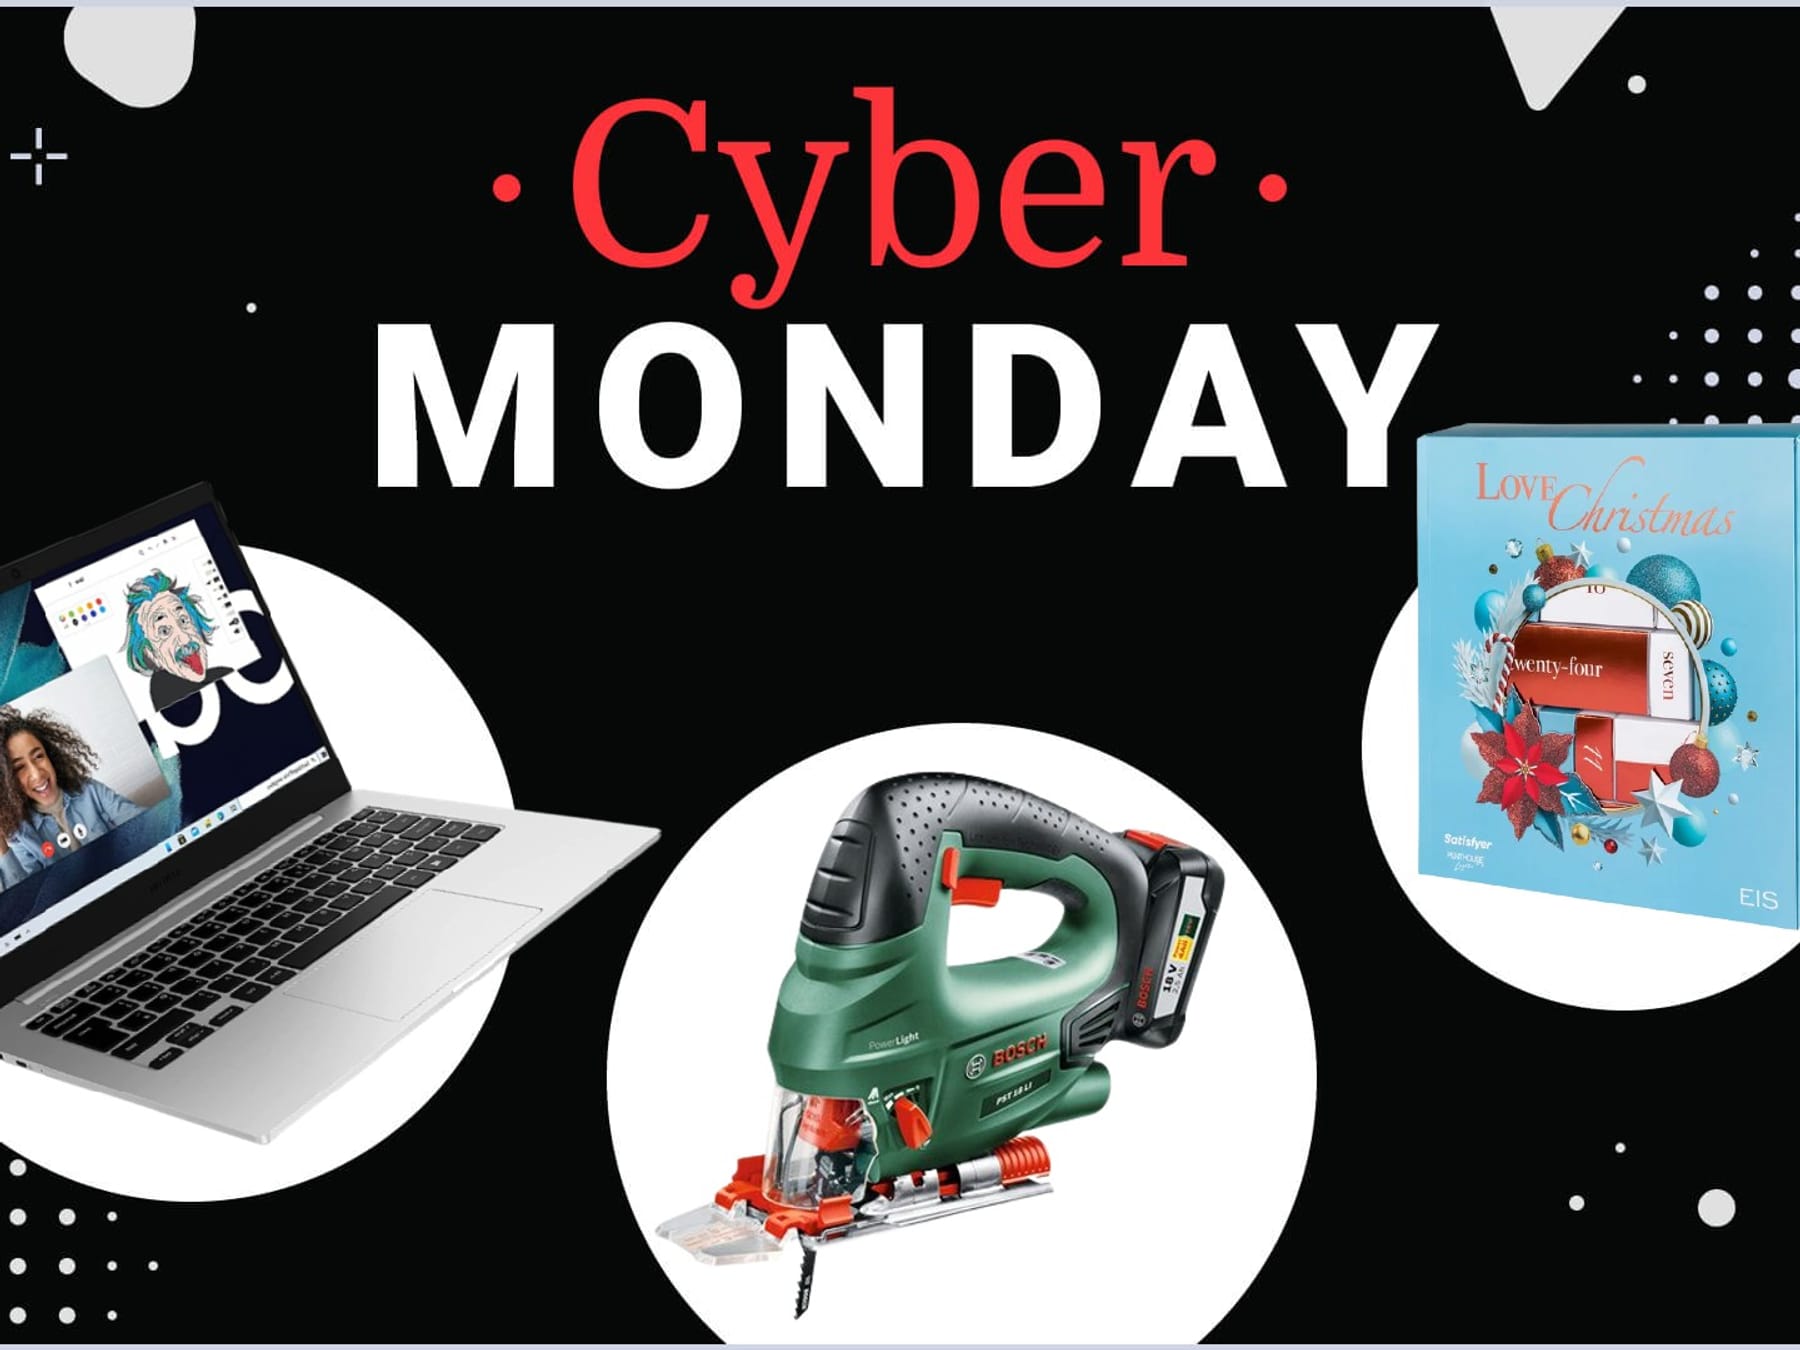 Diese Cyber-Monday-Angebote sind heute noch verfügbar